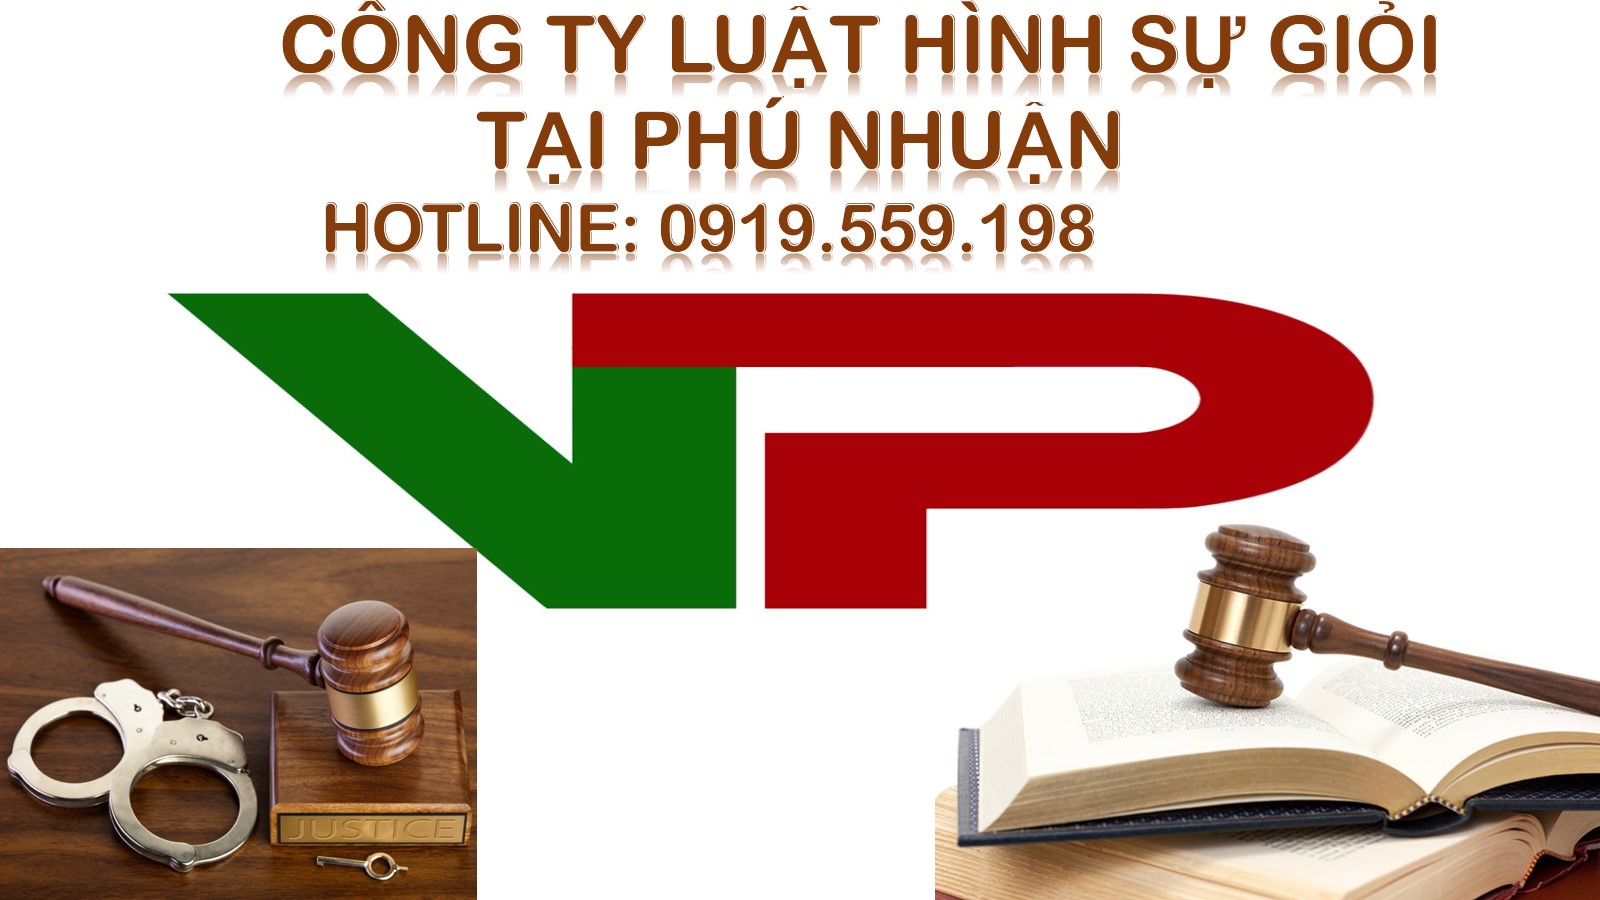 Công ty luật hình sự giỏi tại Phú Nhuận